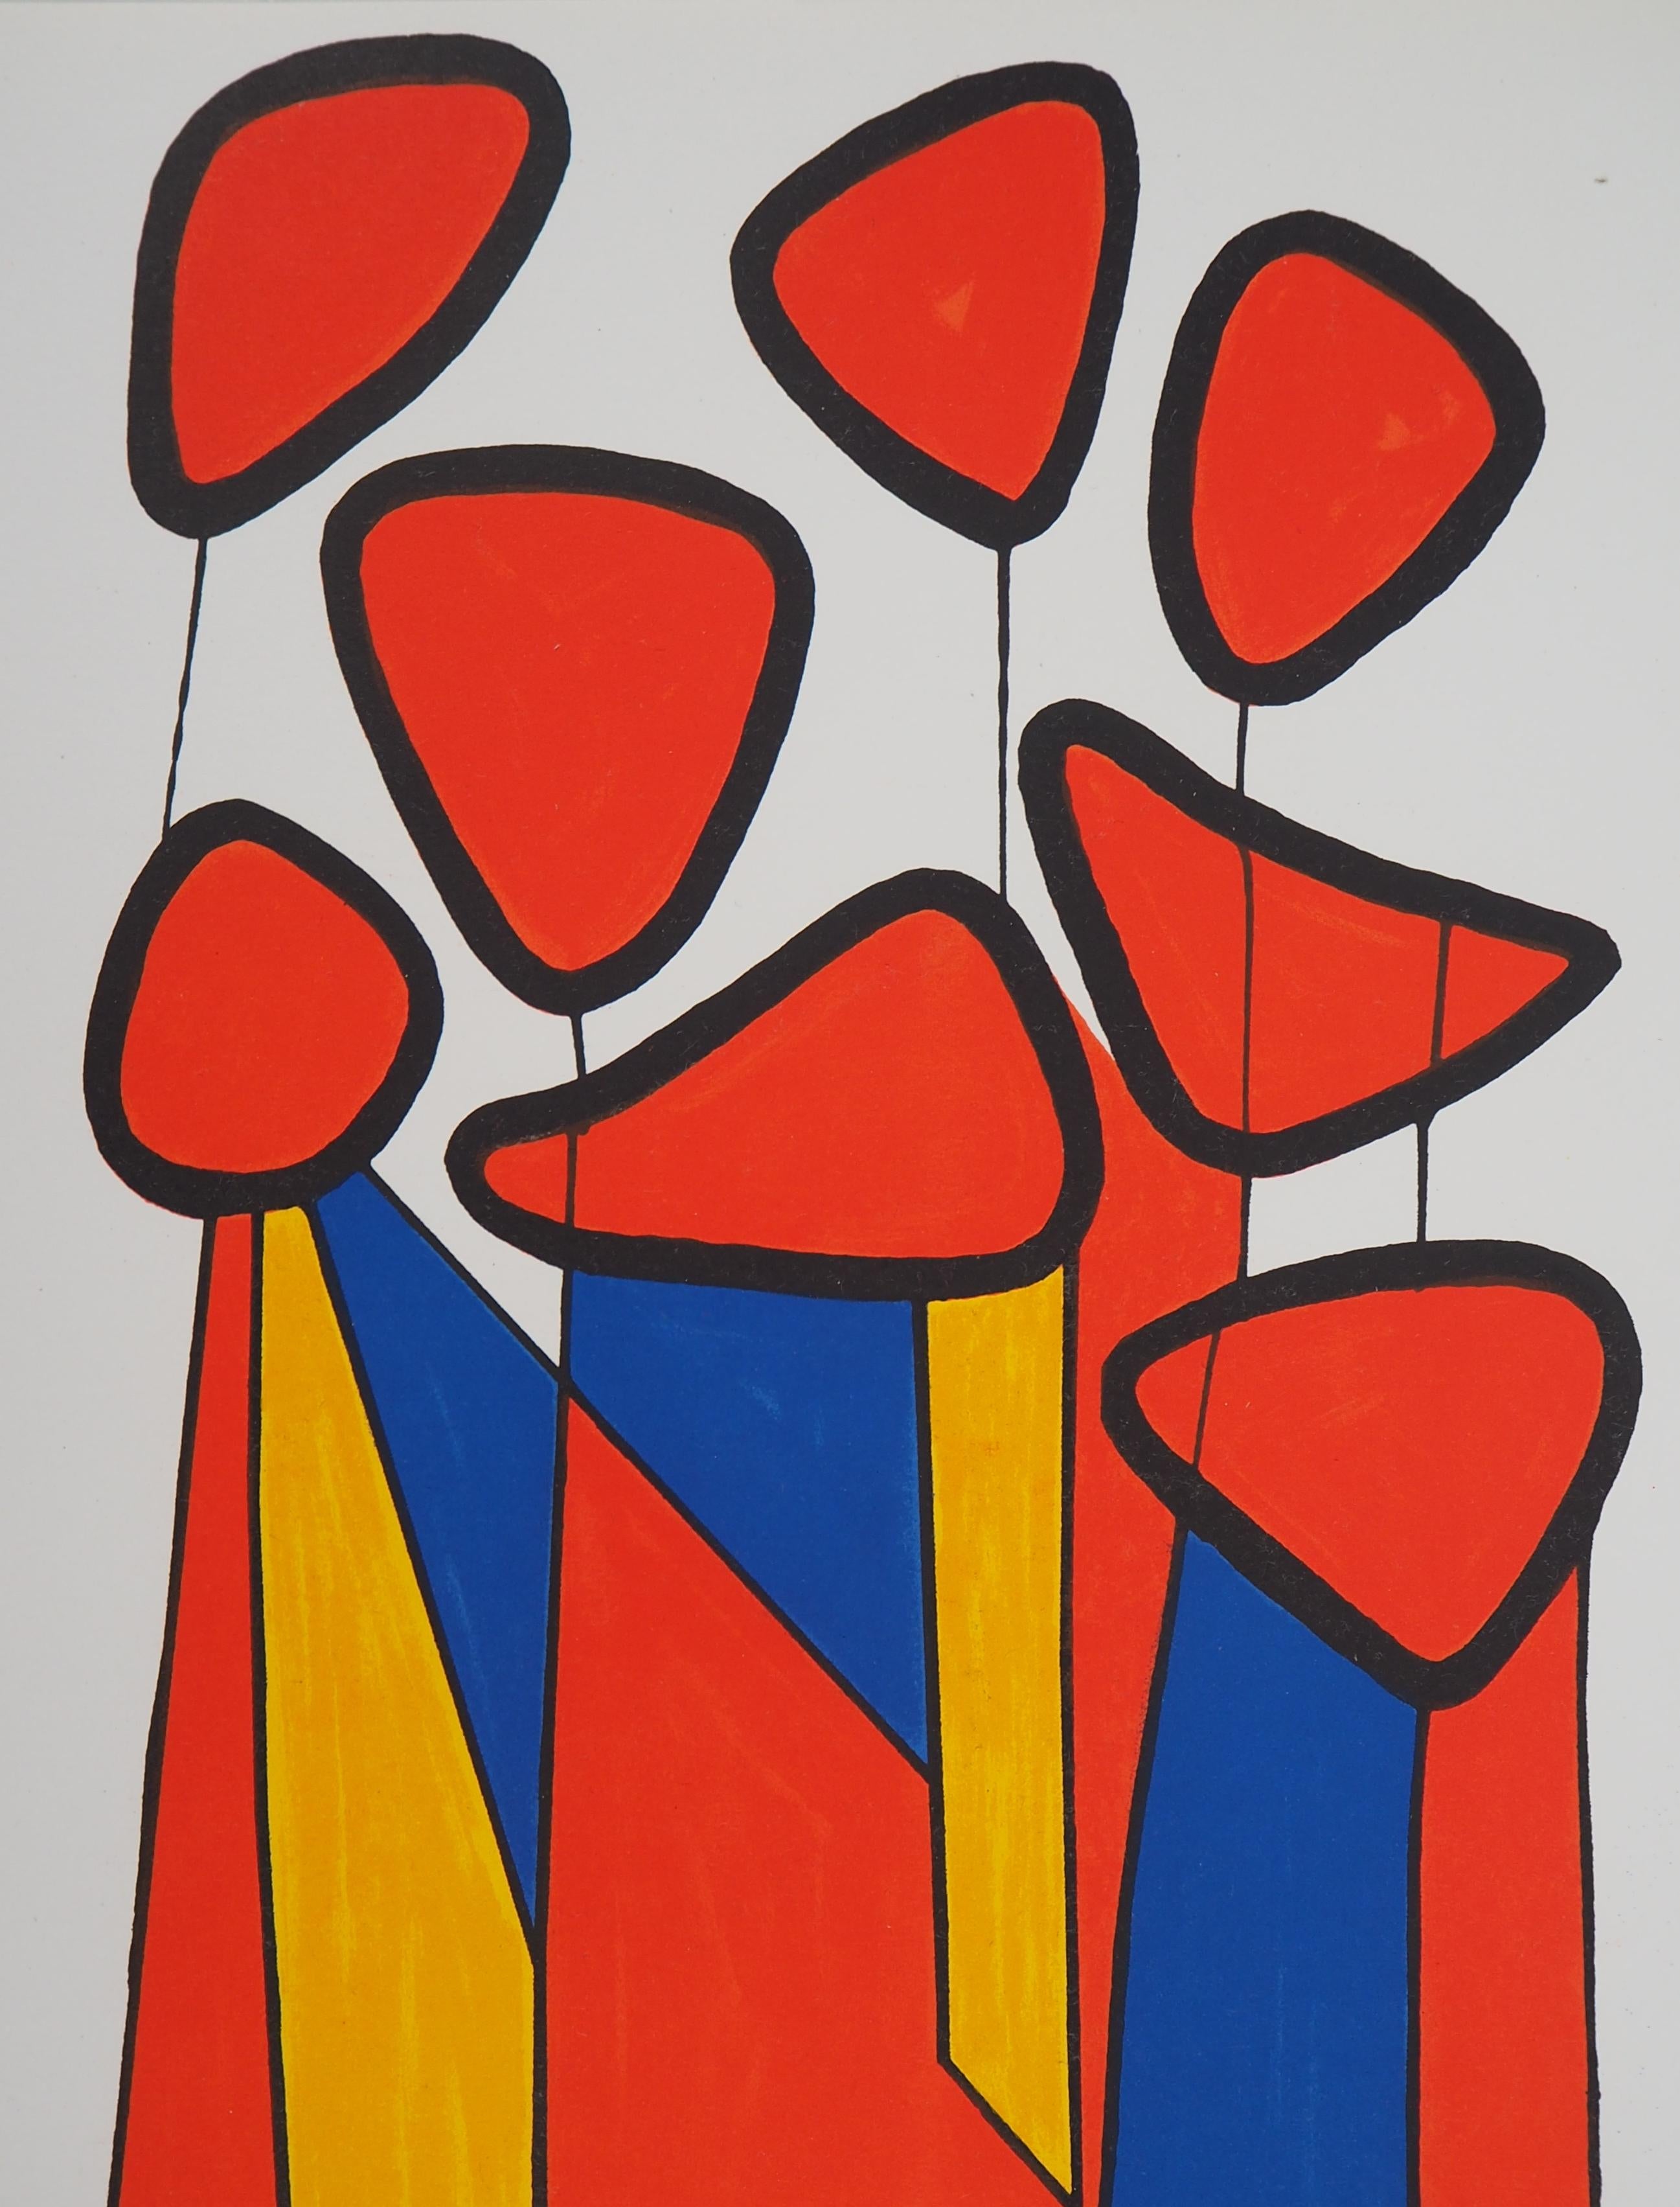 Komposition in Rot, Gelb und Blau - Lithographie - Mourlot, 1972 – Print von Alexander Calder